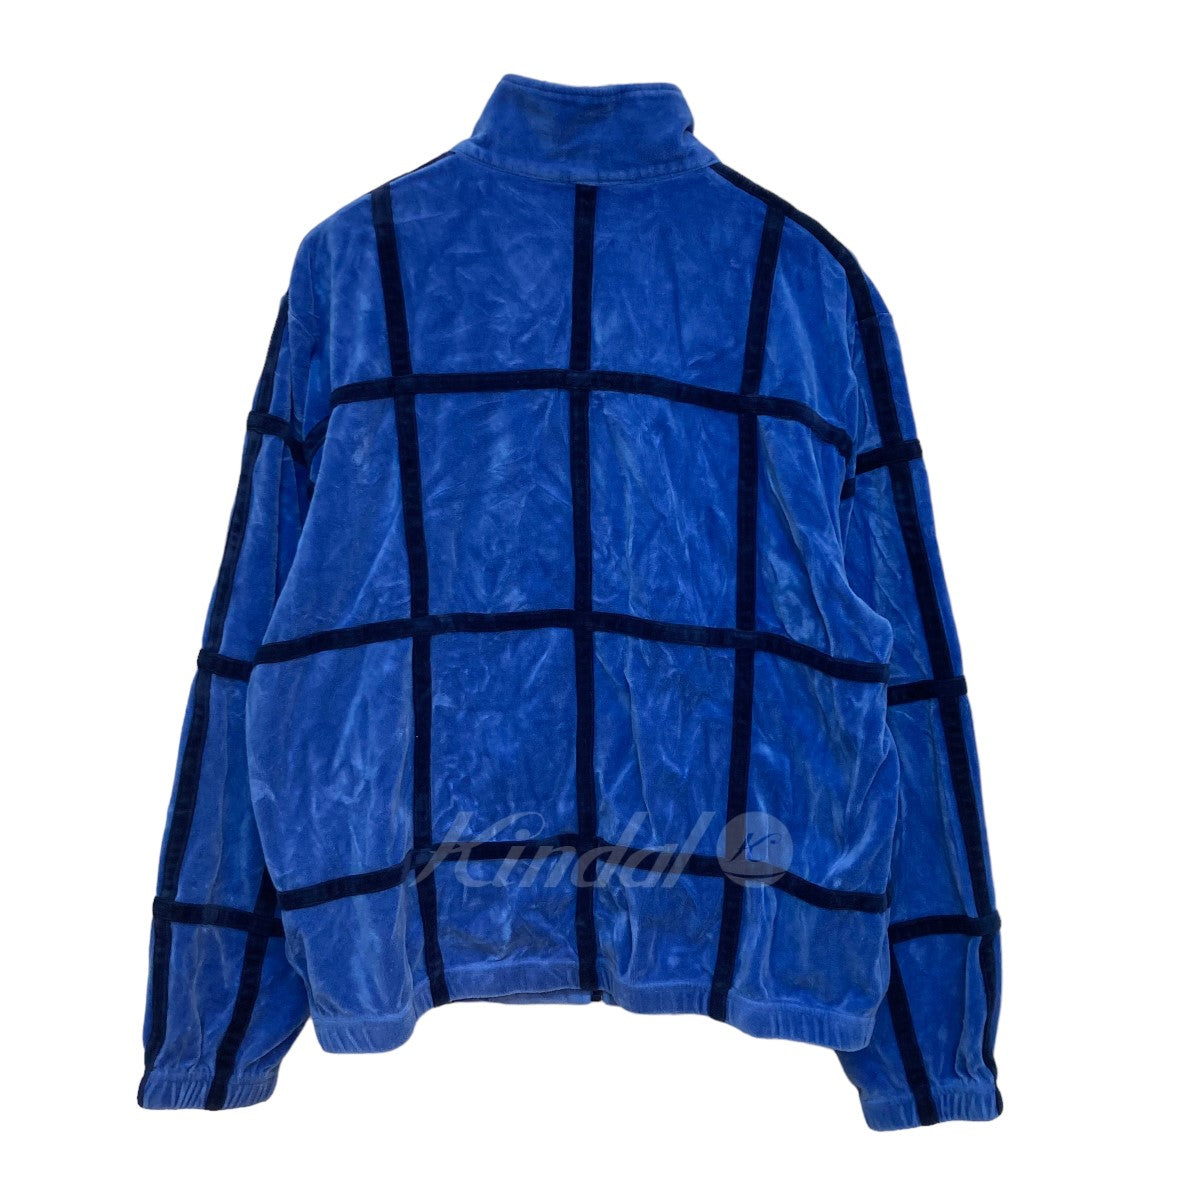 8,200円supreme grid taping velour jacket 新品未使用品